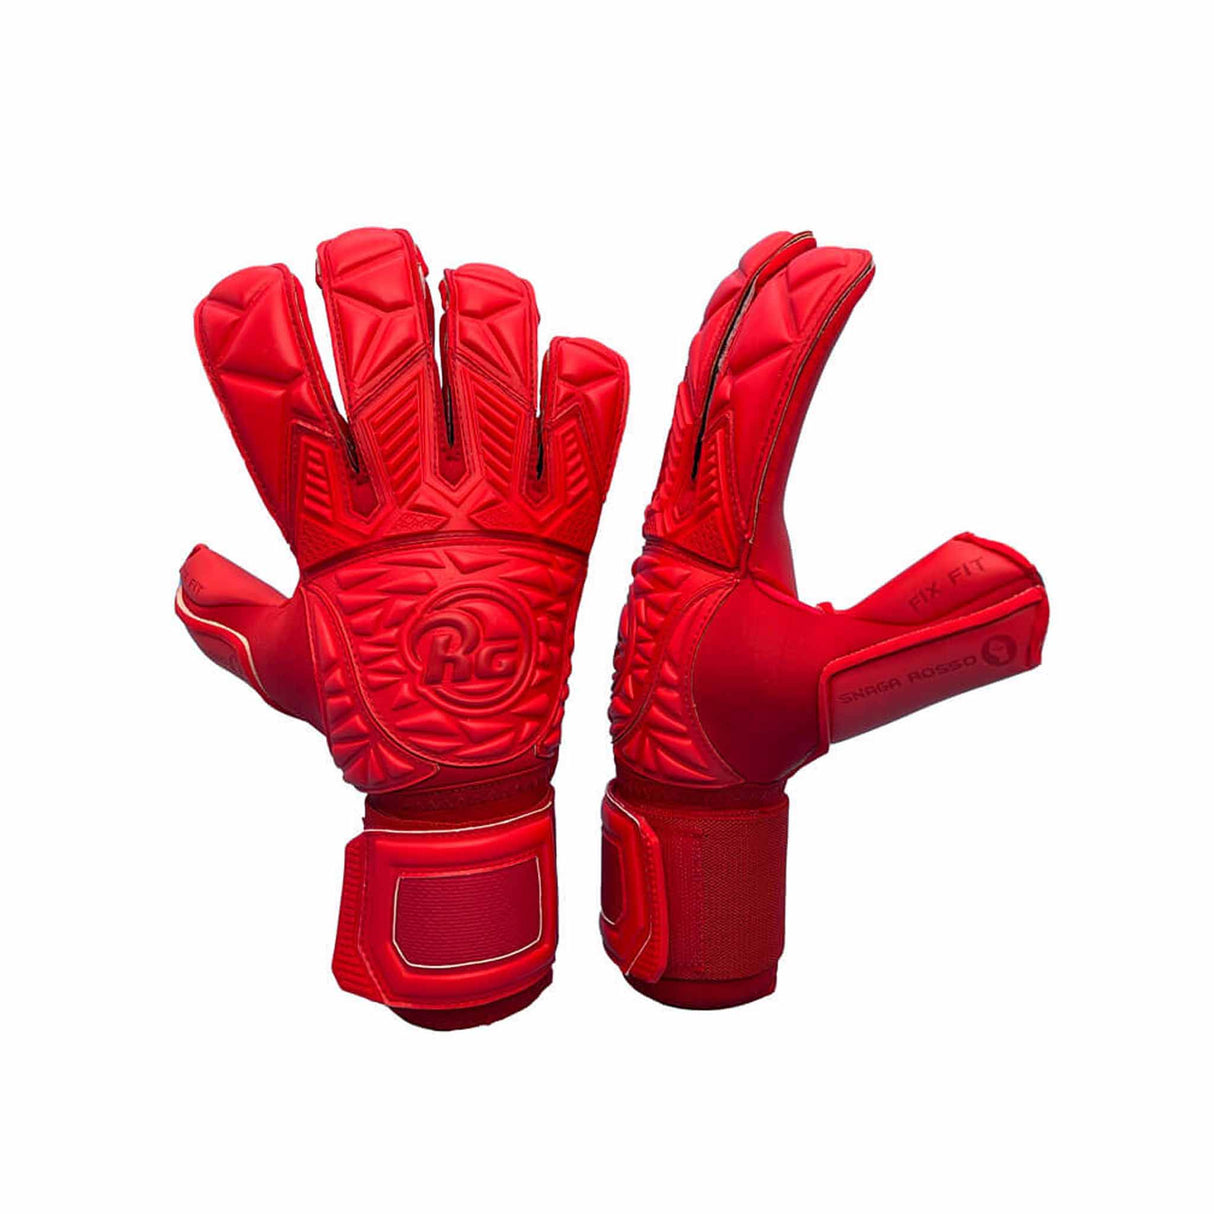 RG Goalkeeper Gloves Snaga Rosso gants de gardien de but de soccer - Rouge paire pouce